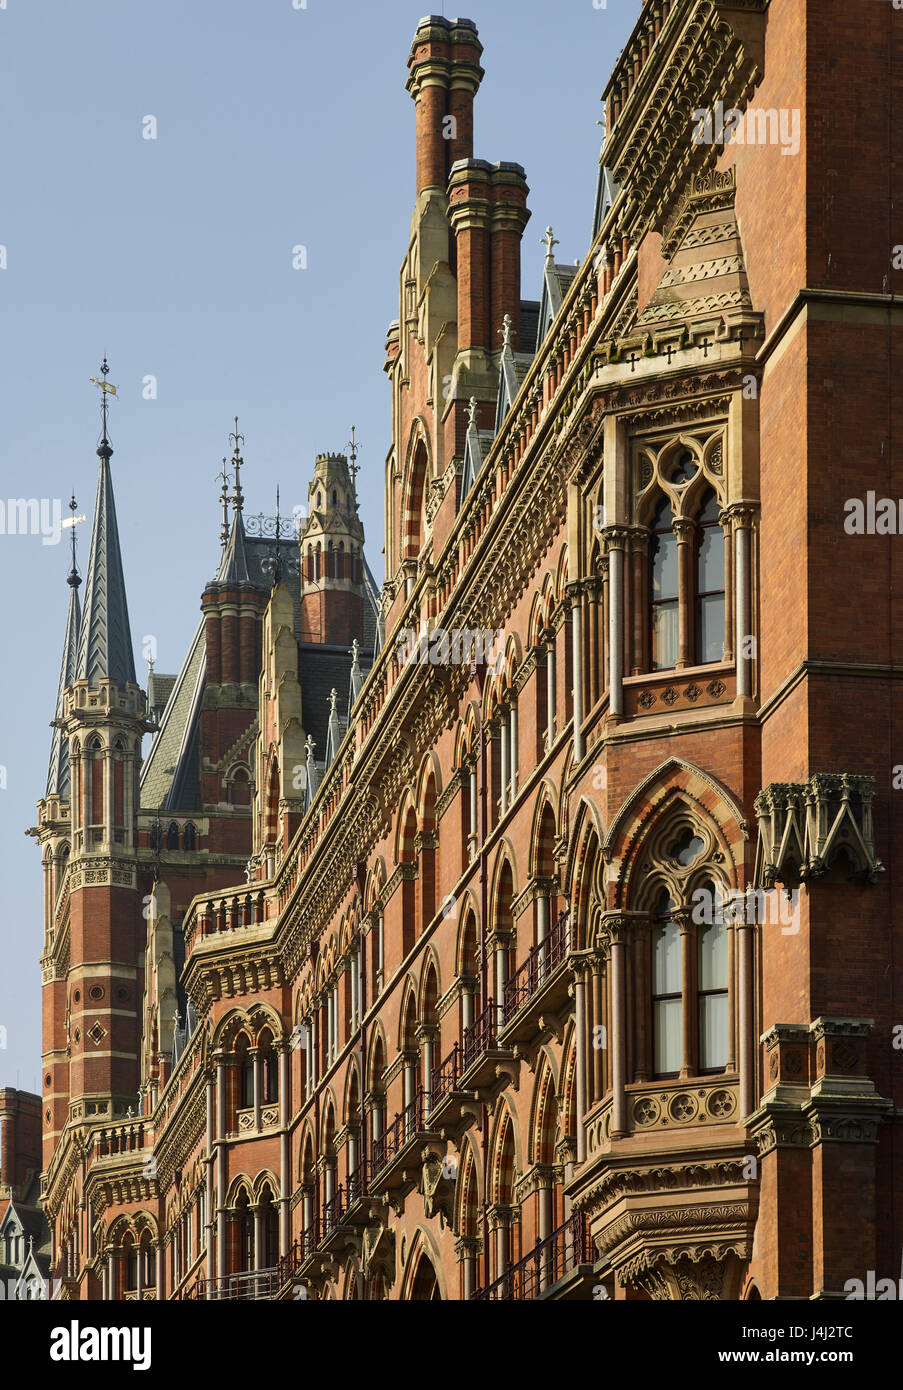 L'avant du Midland Grand Hotel à St Pancras, Londres. Conçu par George Gilbert Scott, dans les années 1860, à l'époque victorienne de style néo-gothique. Banque D'Images